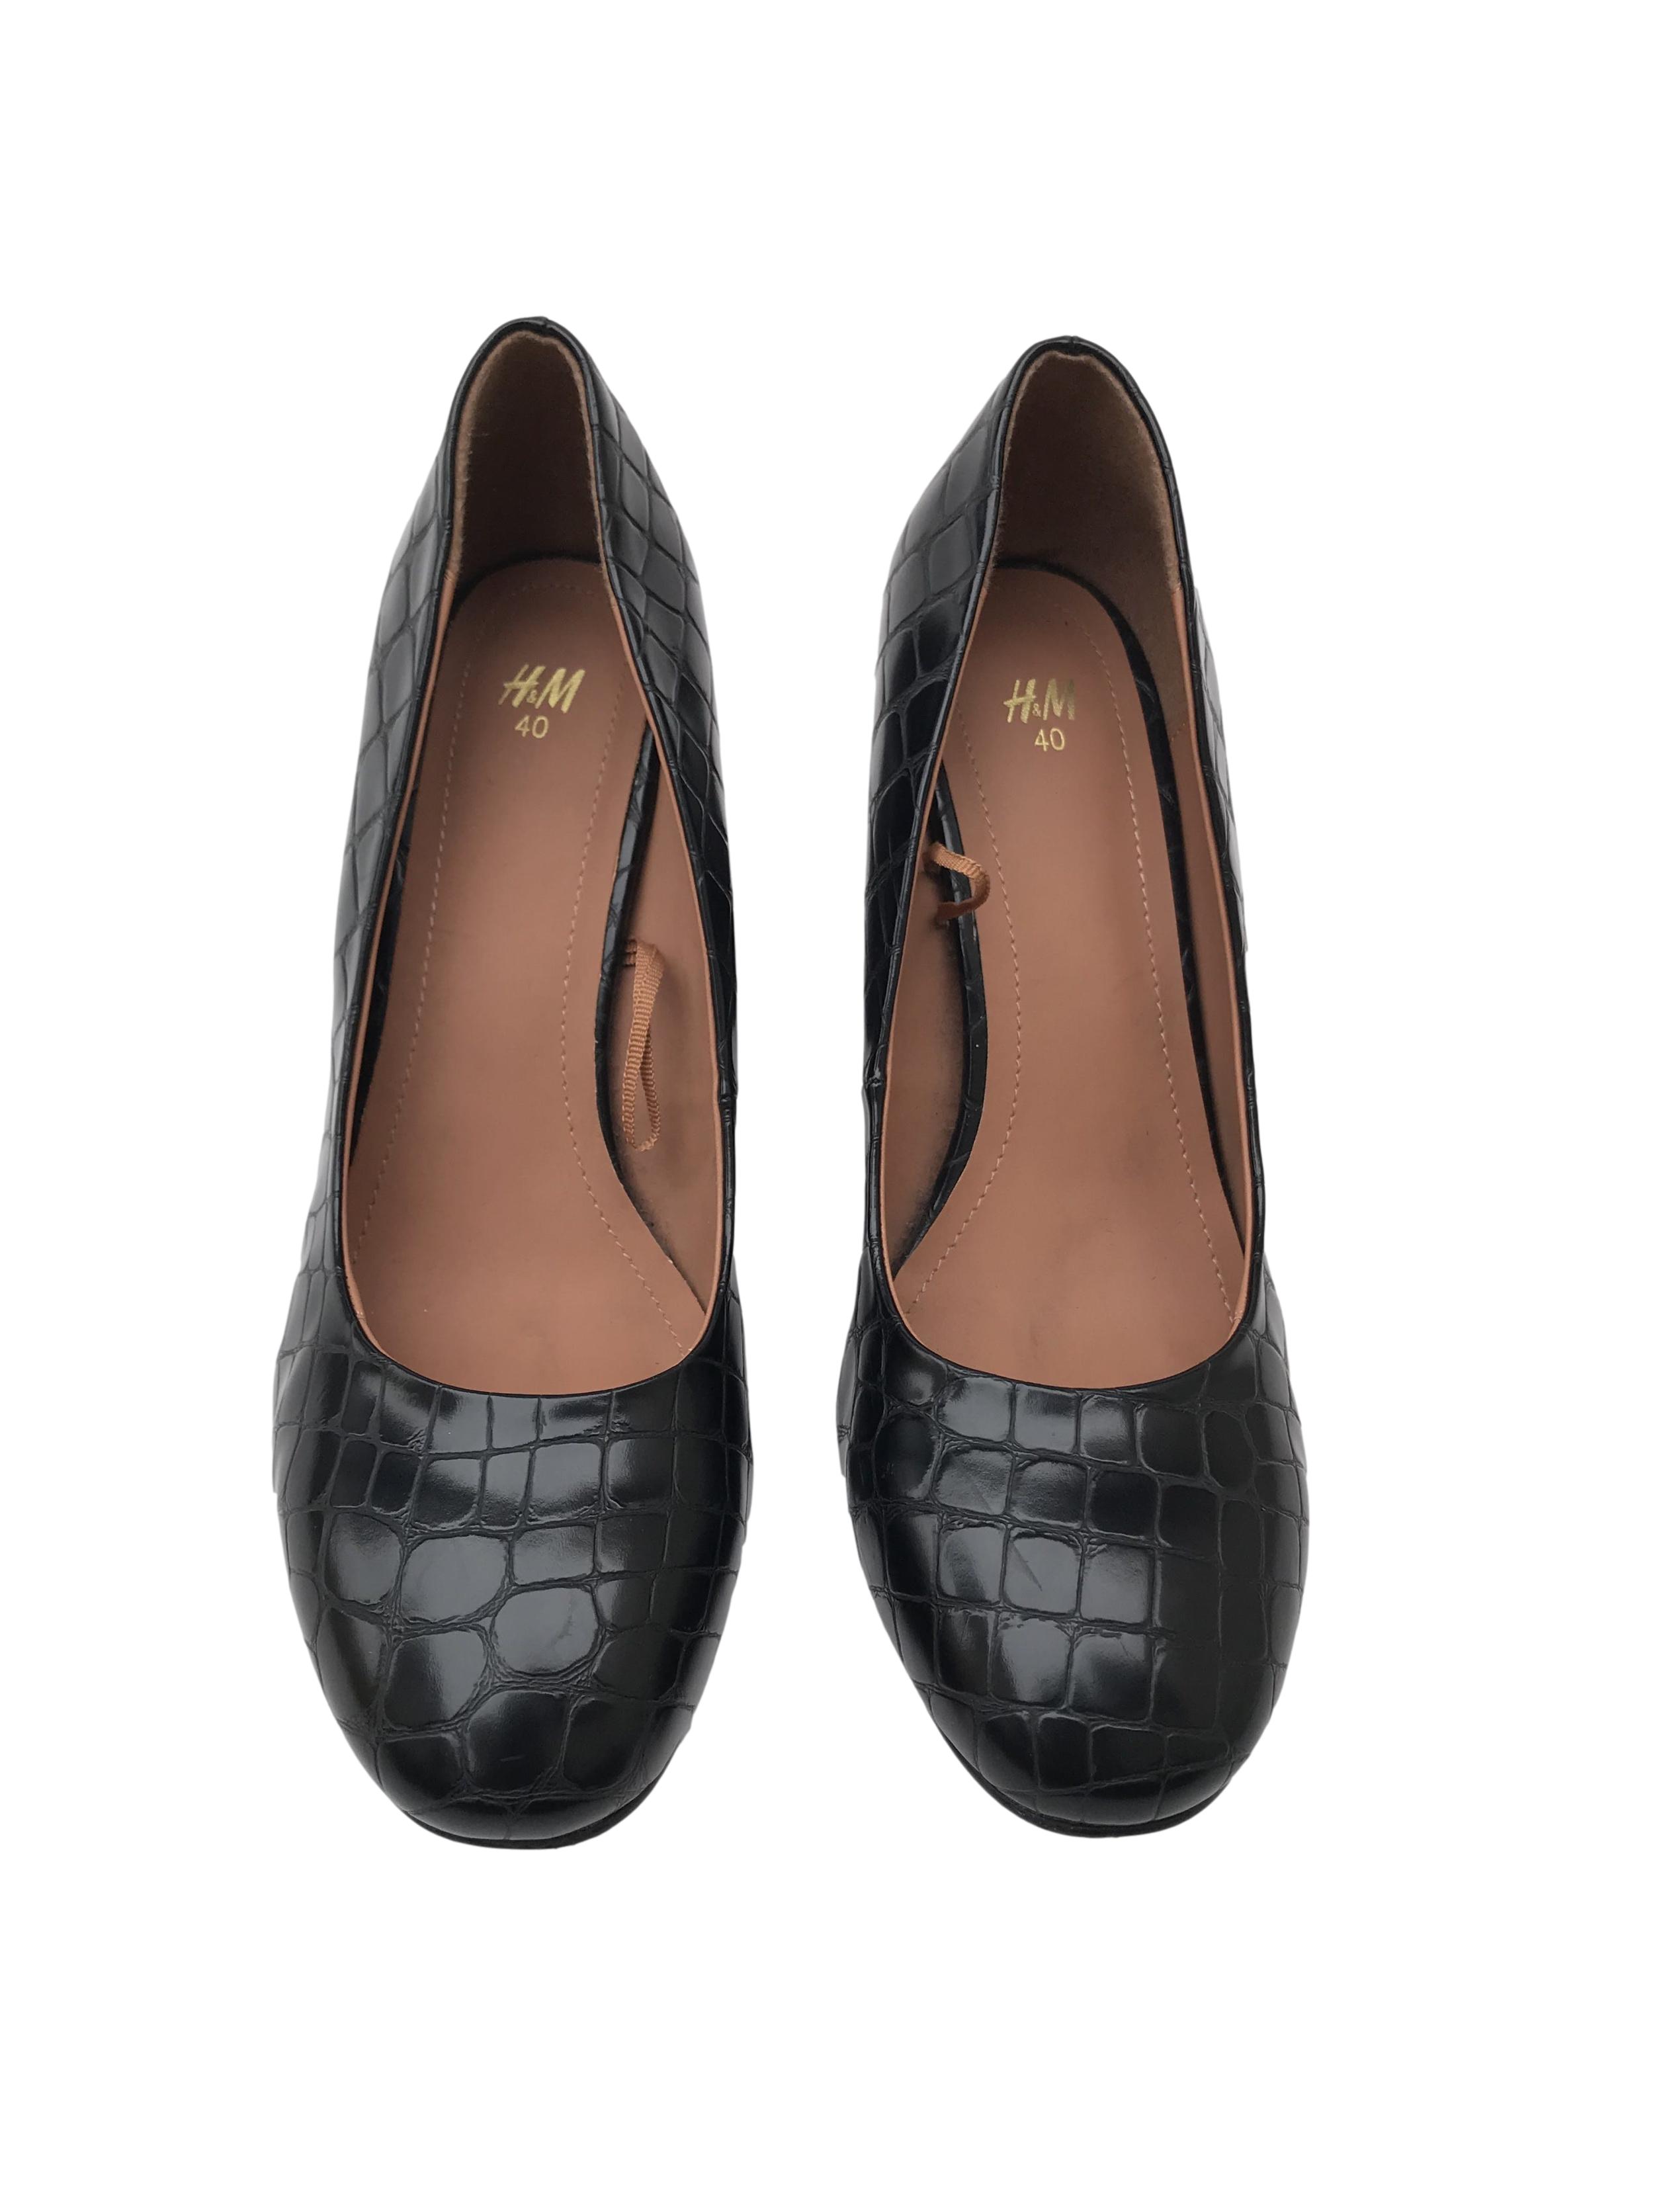 Zapatos H&M negros con textura pitón tipo cuero, punta redonda, taco grueso 9cm. Estado 9/10